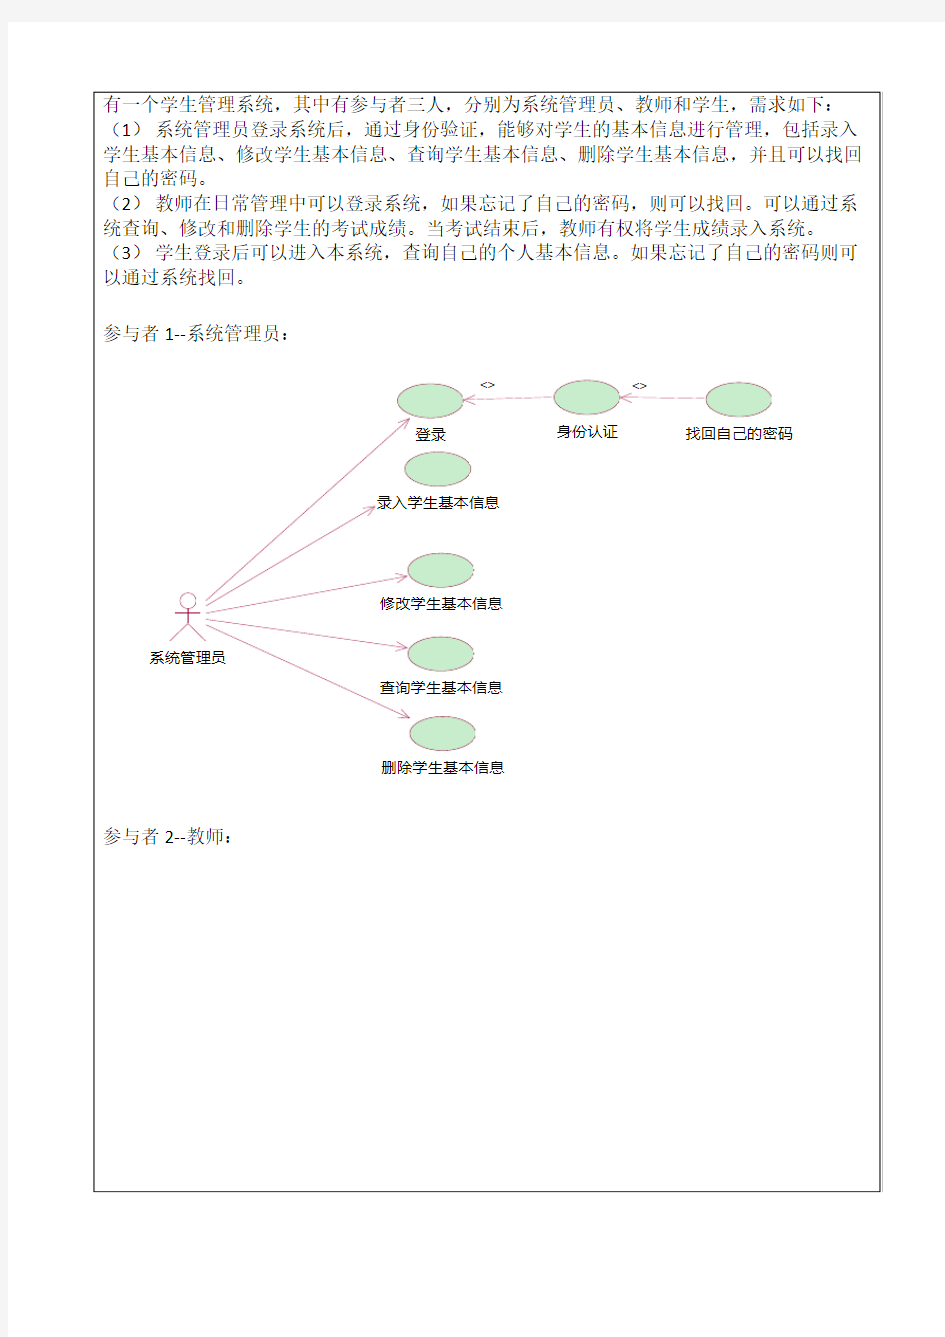 学生管理系统用例图、类图、对象图的绘制(UML)